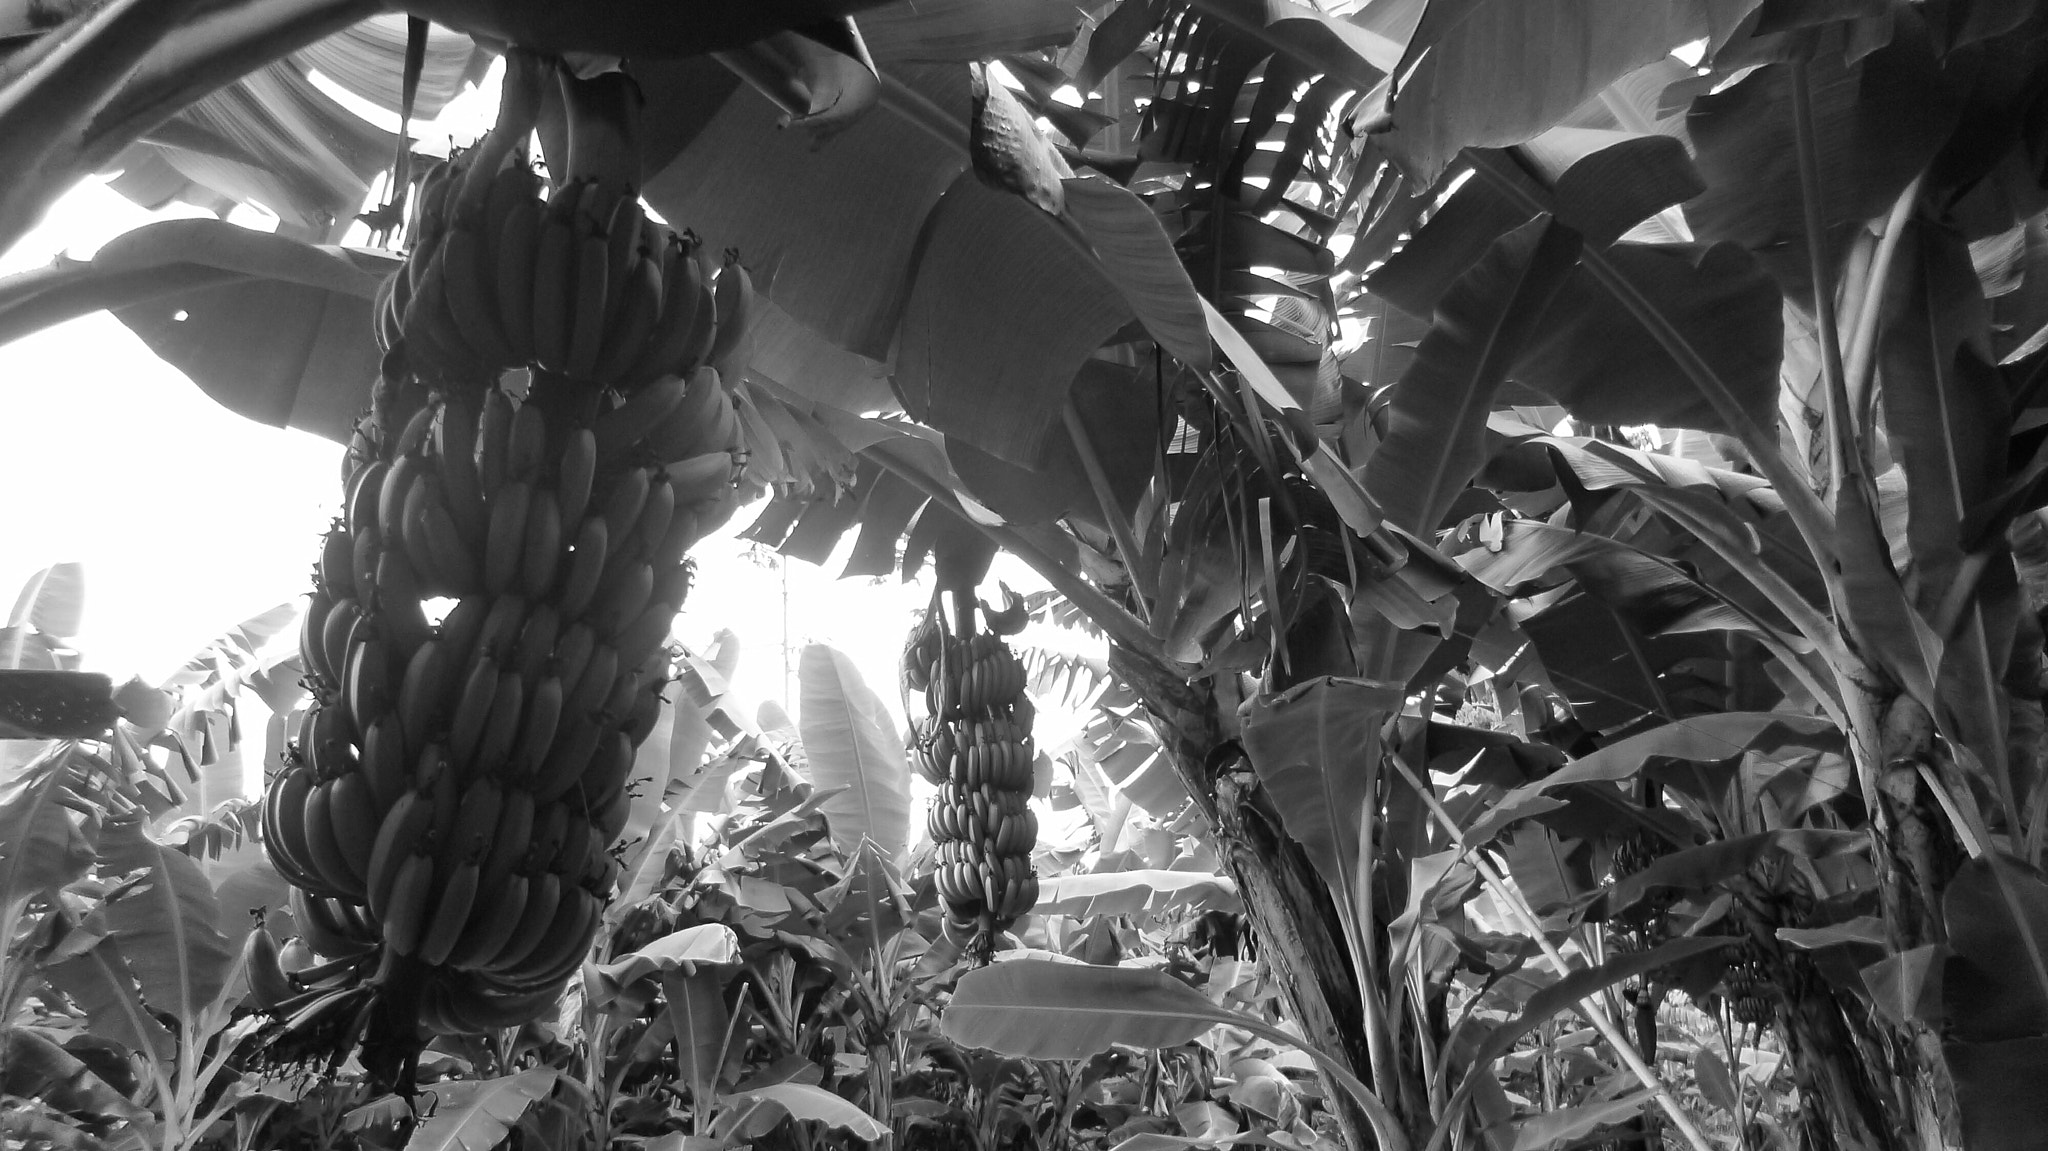 Panasonic DMC-FX80 sample photo. Banana tree photography